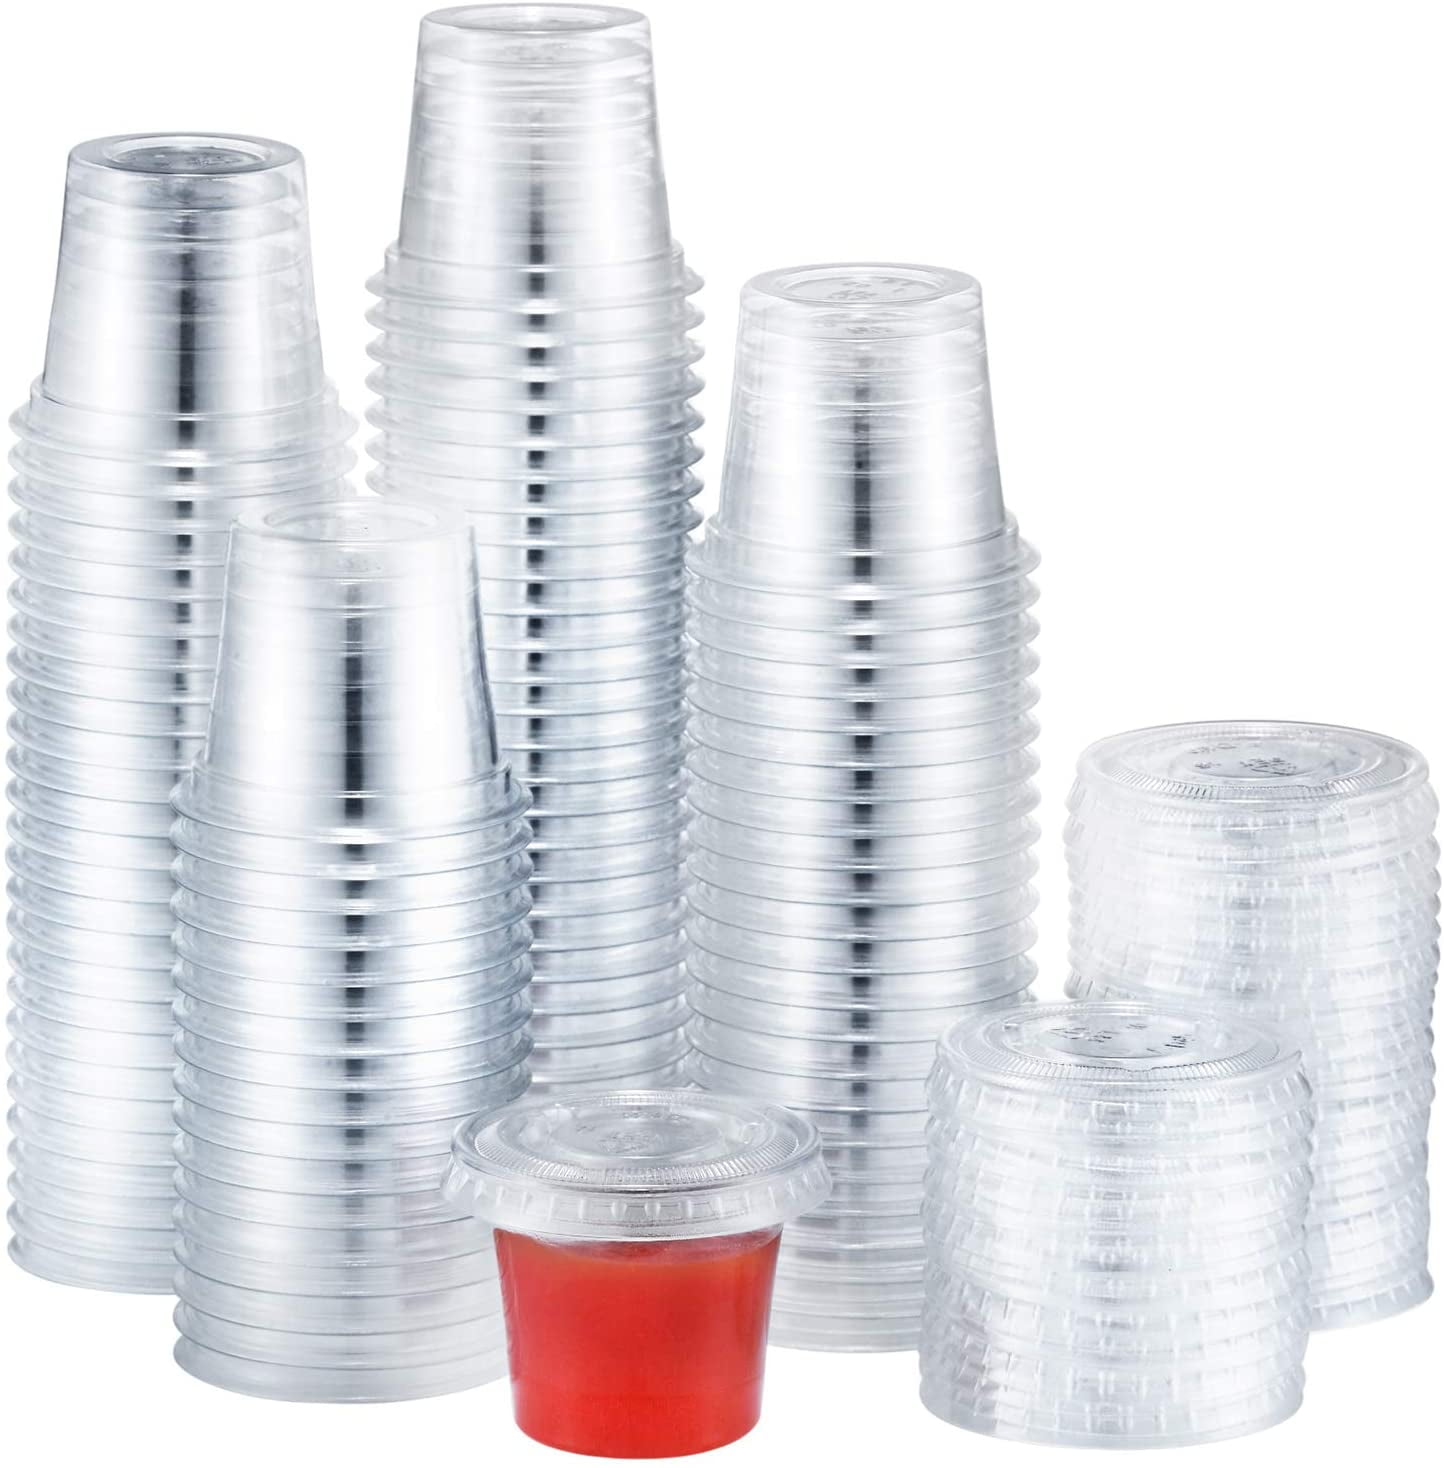 1 oz Disposable Plastic Portion Cups with Lids 300 Sets, Jello Shot